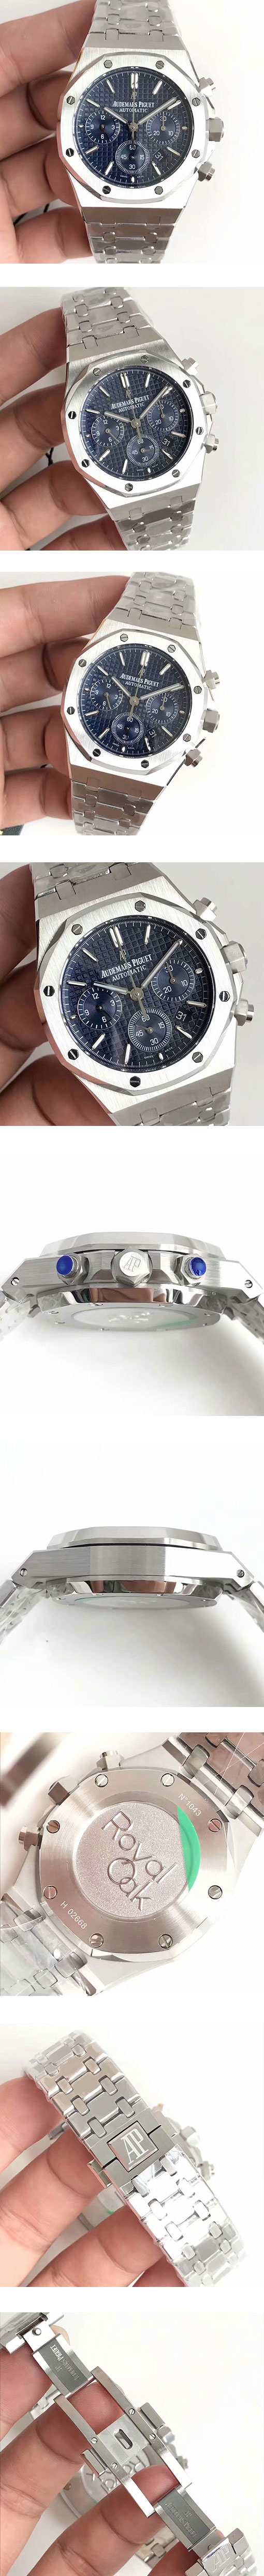 「メンズ腕時計」 最新品オーデマピゲコピー ロイヤルオーク クロノグラフ 26320ST.OO.1220ST.03